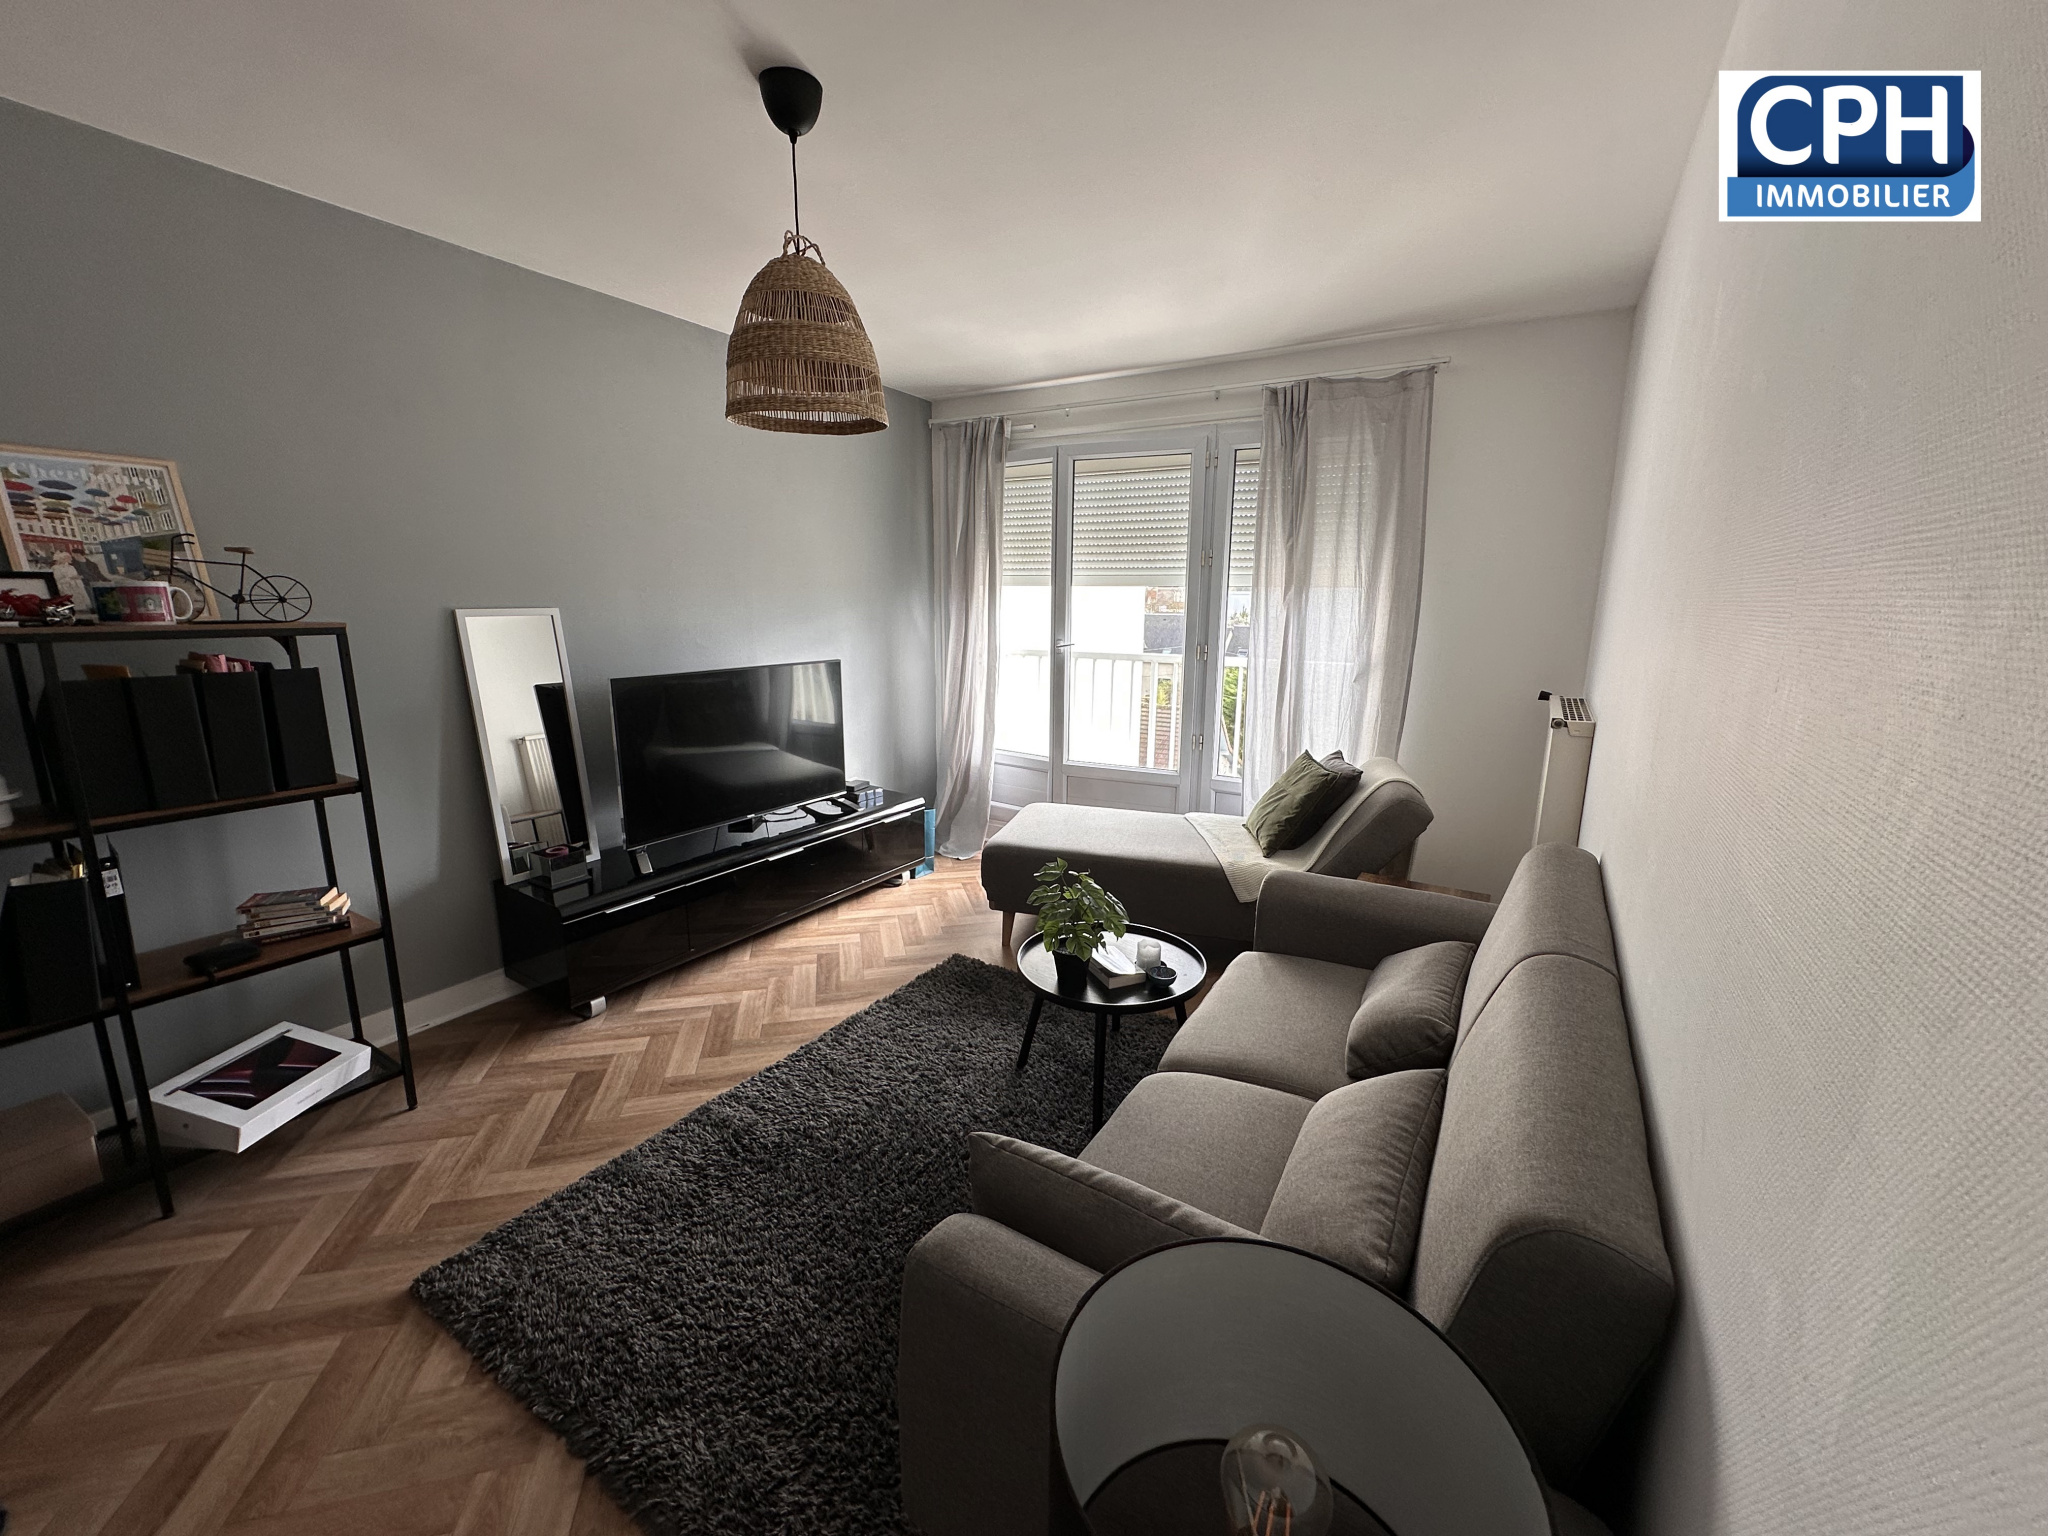 Vente Appartement 42m² 2 Pièces à Caen (14000) - Cph Immobilier